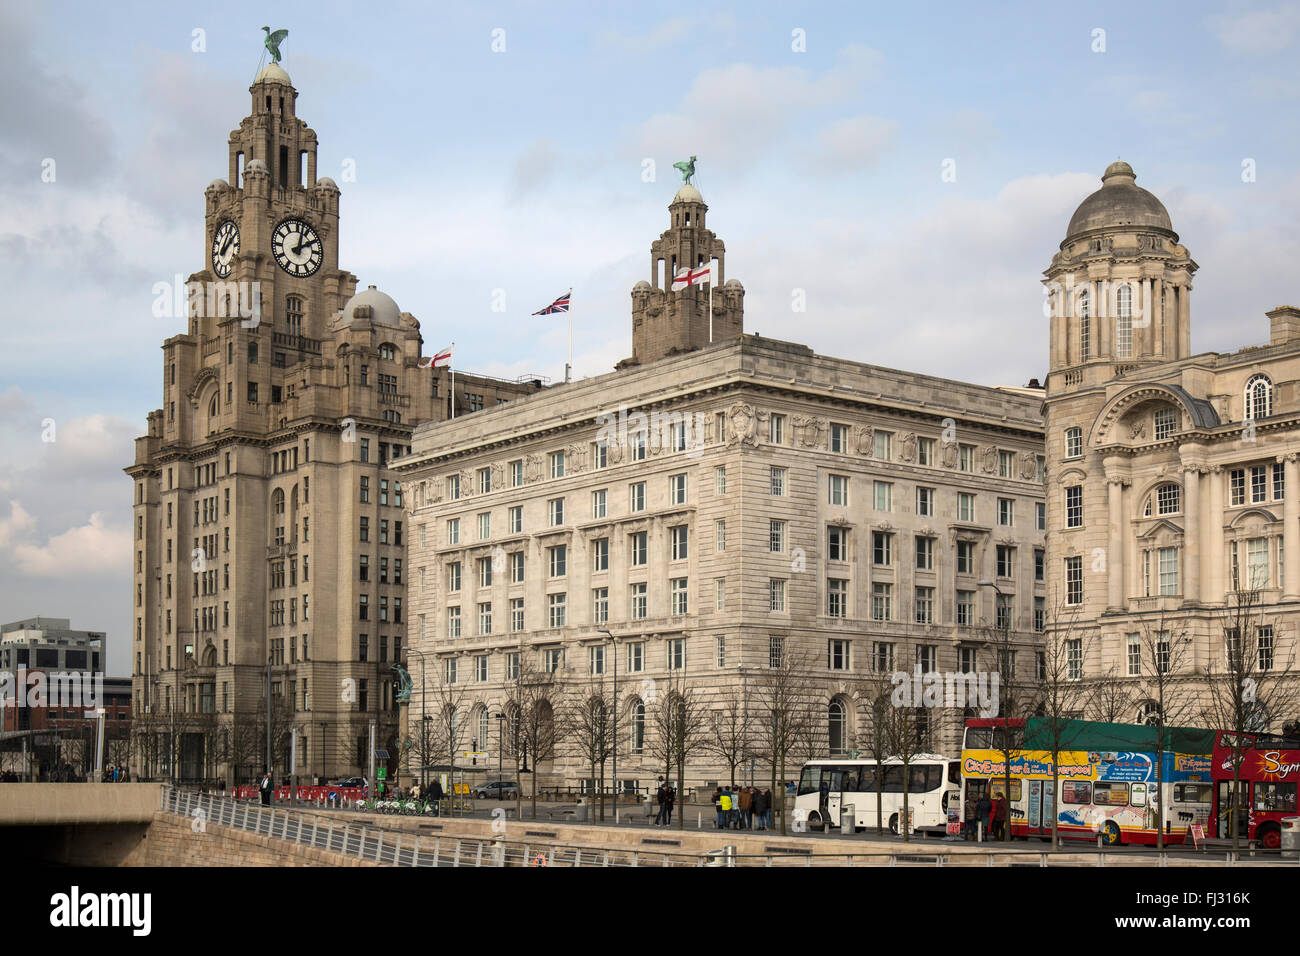 Il Royal Liver Building di Liverpool, in Inghilterra, con la Cunard Building a fianco. Foto Stock